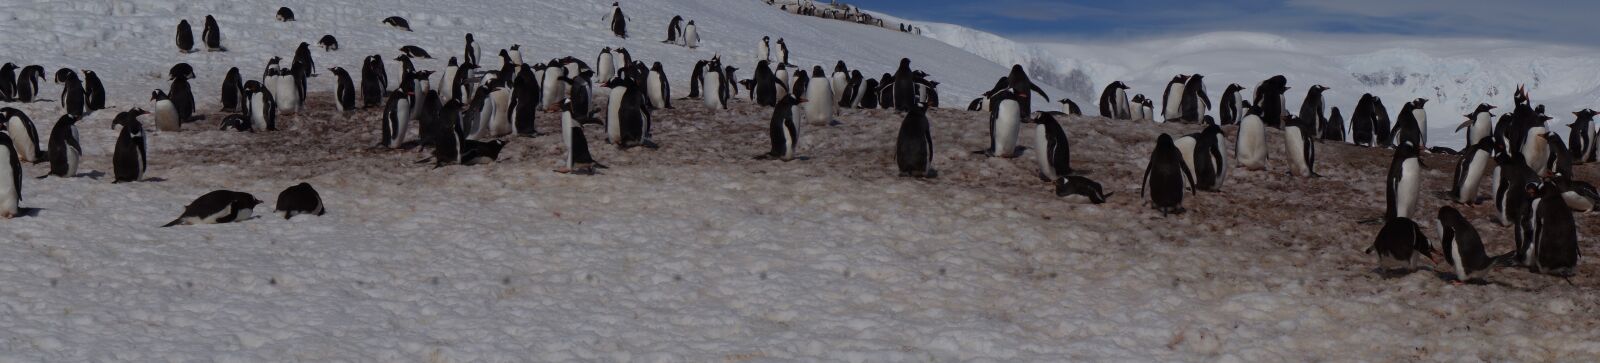 Sony Alpha NEX-5N + Sony E 18-55mm F3.5-5.6 OSS sample photo. Antarctica, glacier, penguin photography